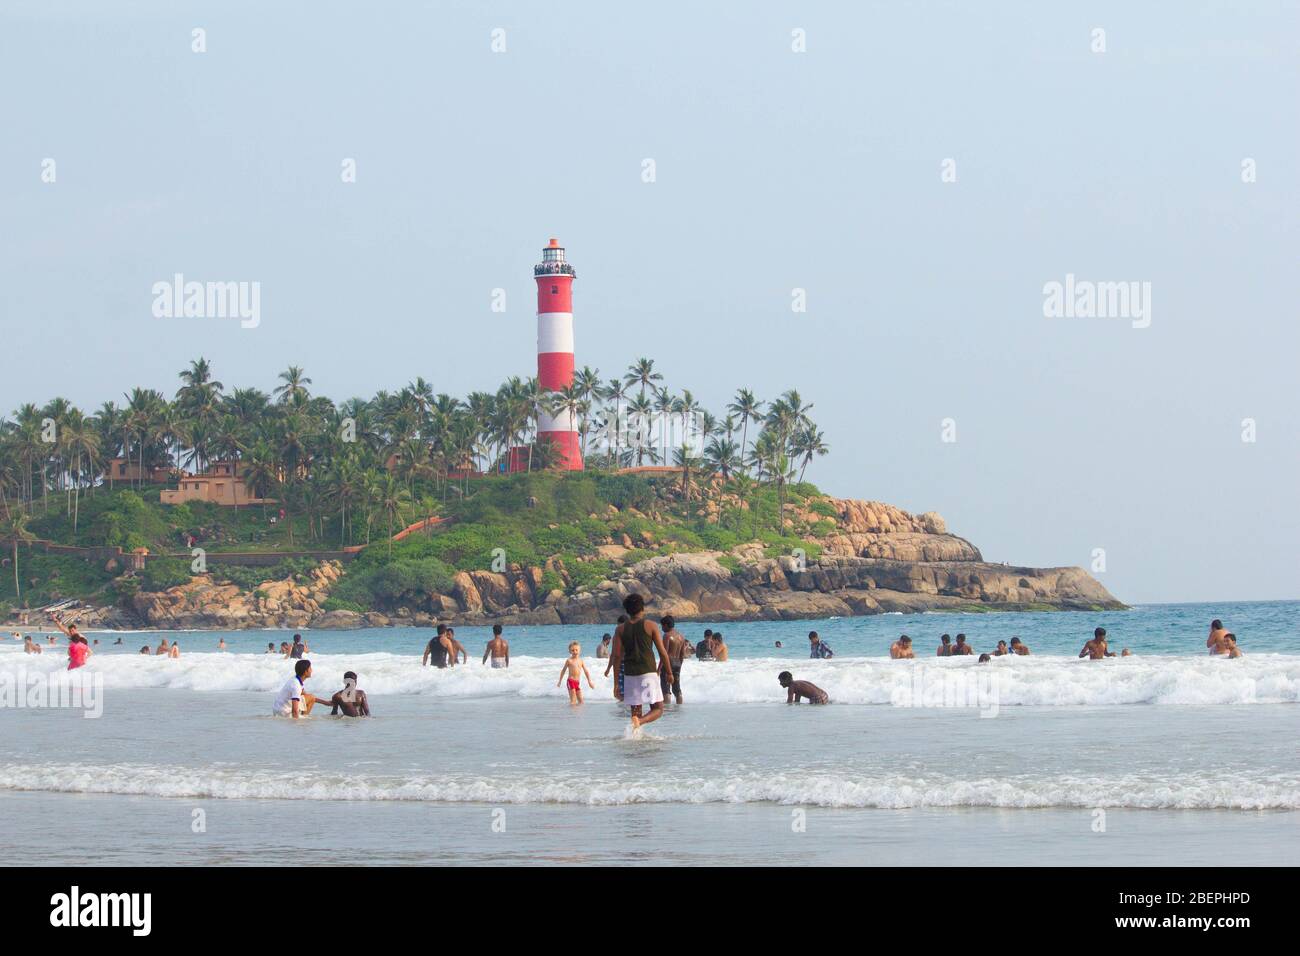 Un lieu touristique populaire en inde, kerala. Kovalam est une petite ville côtière dans l'état indien du sud de Kerala, au sud de Thiruvananthapuram Banque D'Images